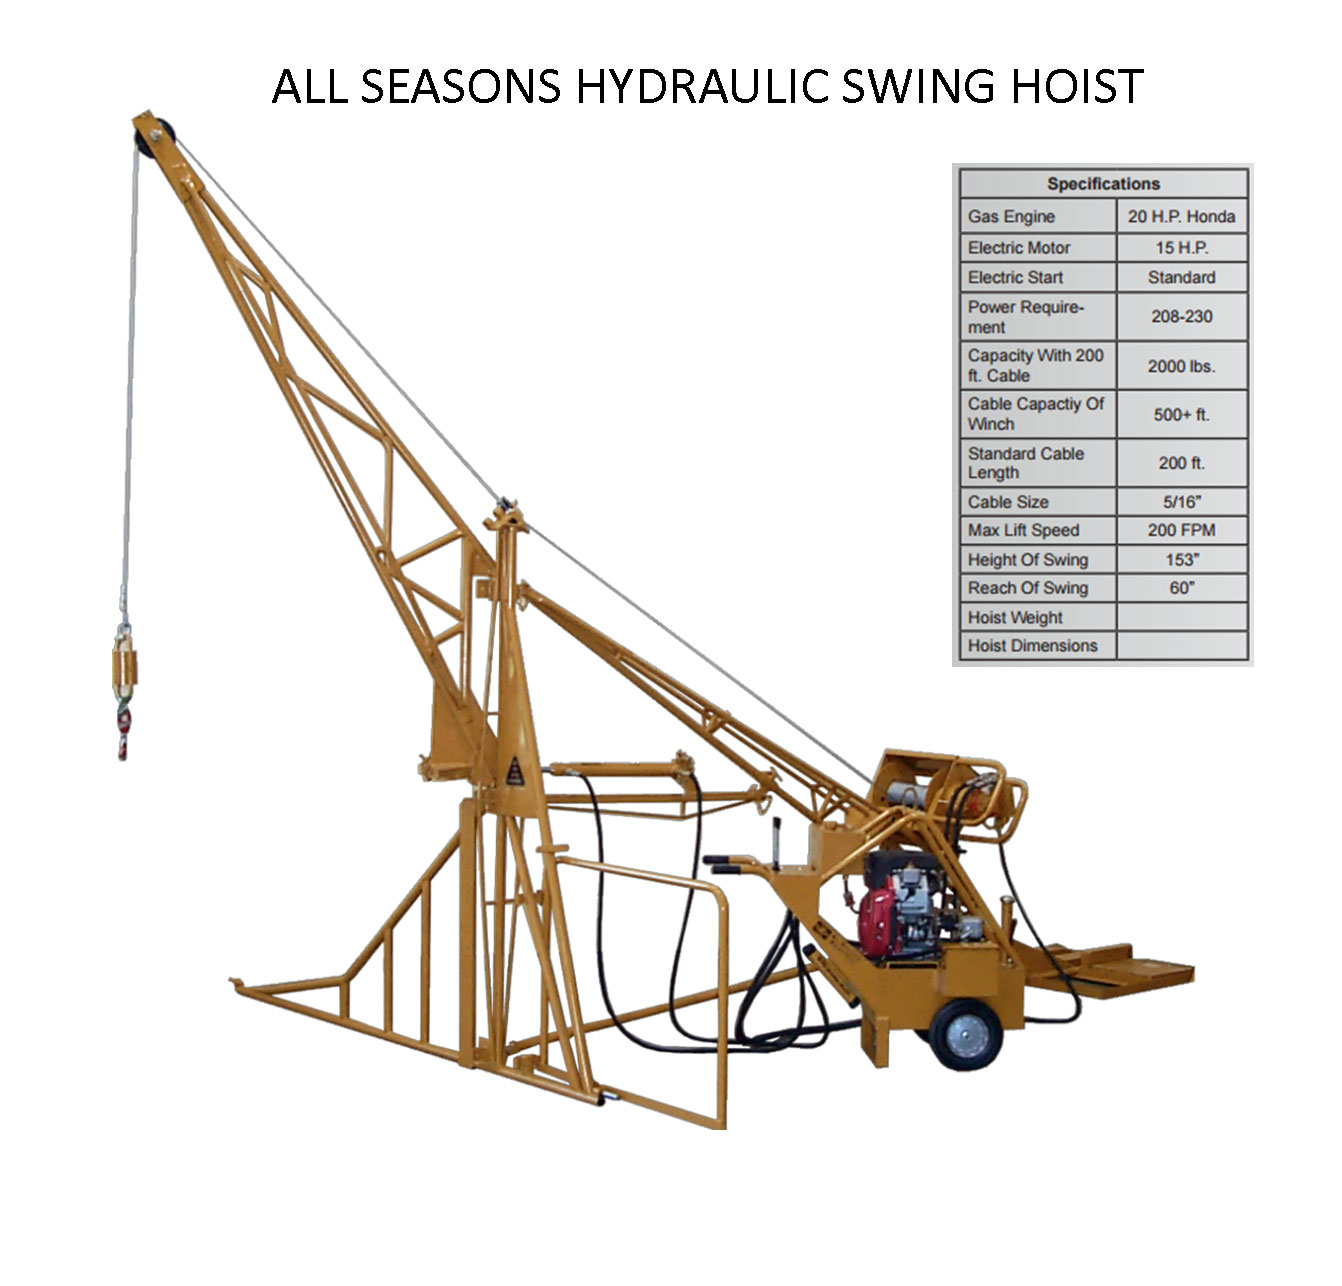 Hydraulic Swing Hoist